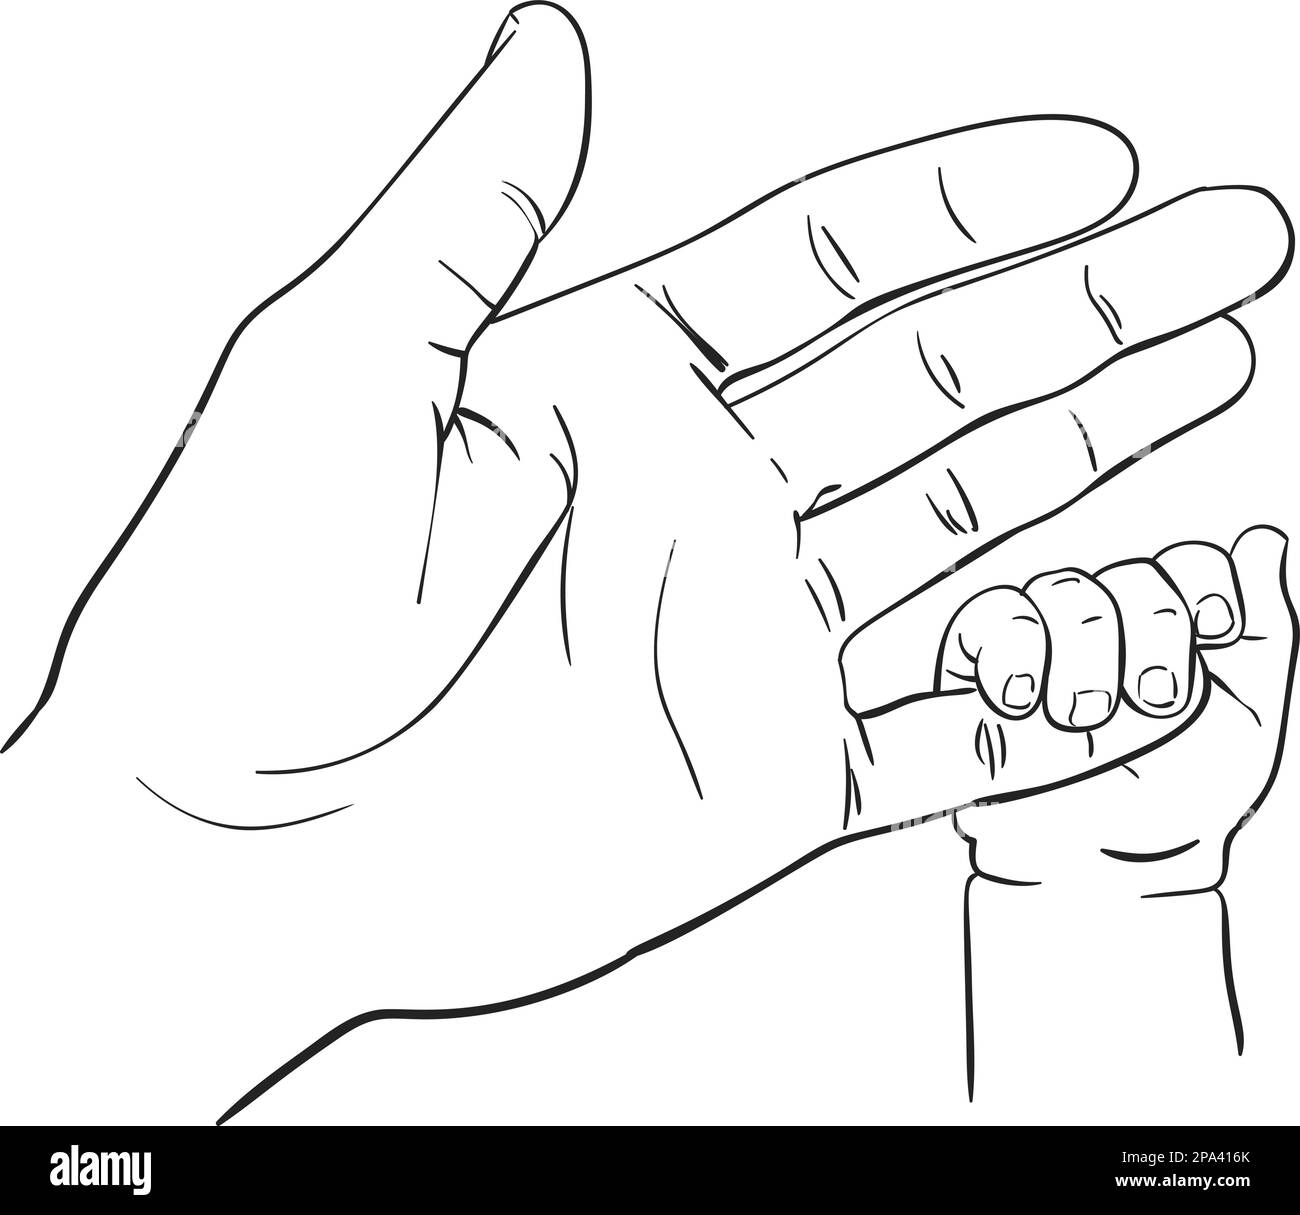 Dessin d'art de ligne de bébé petite main tenant le doigt de mère, heureux  concept de maternité de l'amour et de la famille, dessin à la main  illustration vectorielle isolée sur blanc